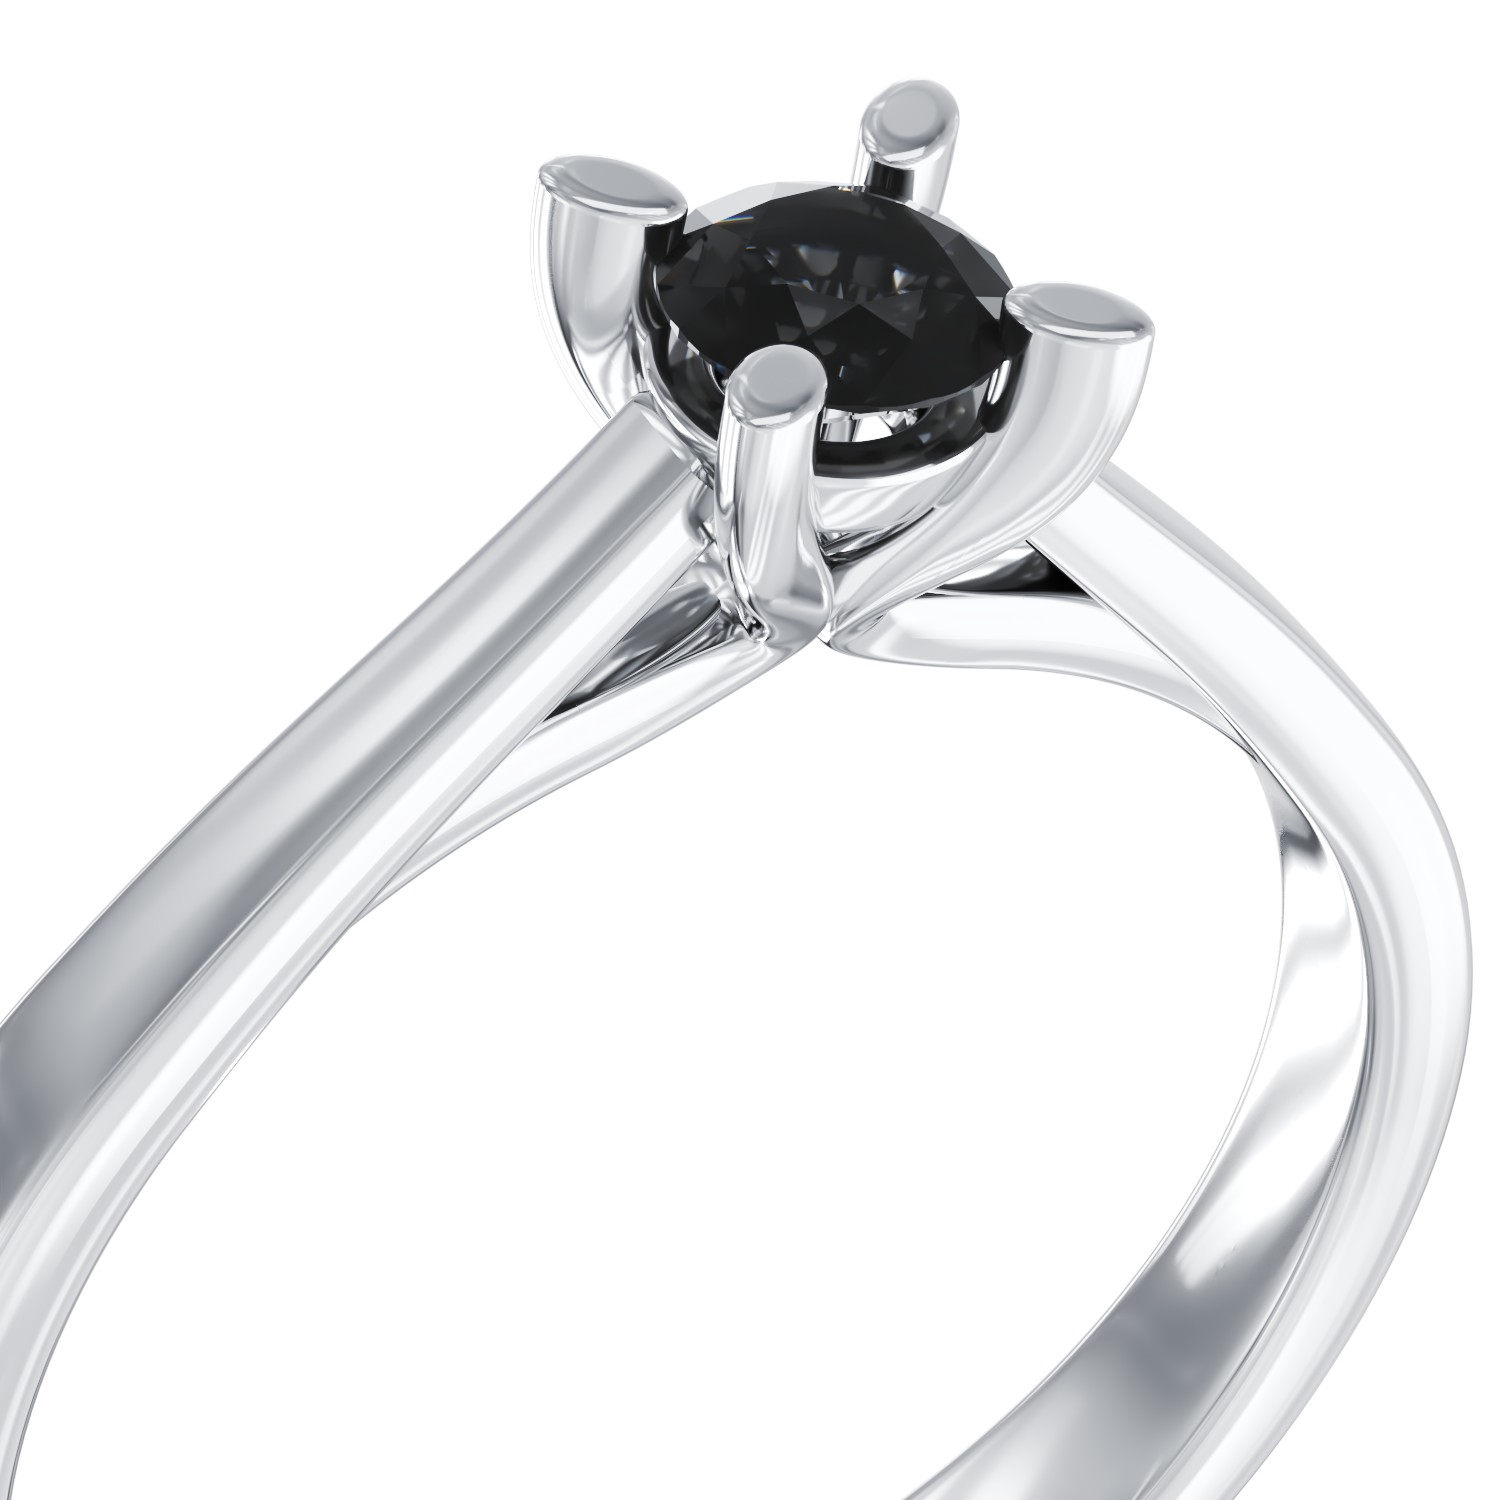 Eljegyzési gyűrű 18K-os fehér aranyból 0,2ct fekete gyémánttal.